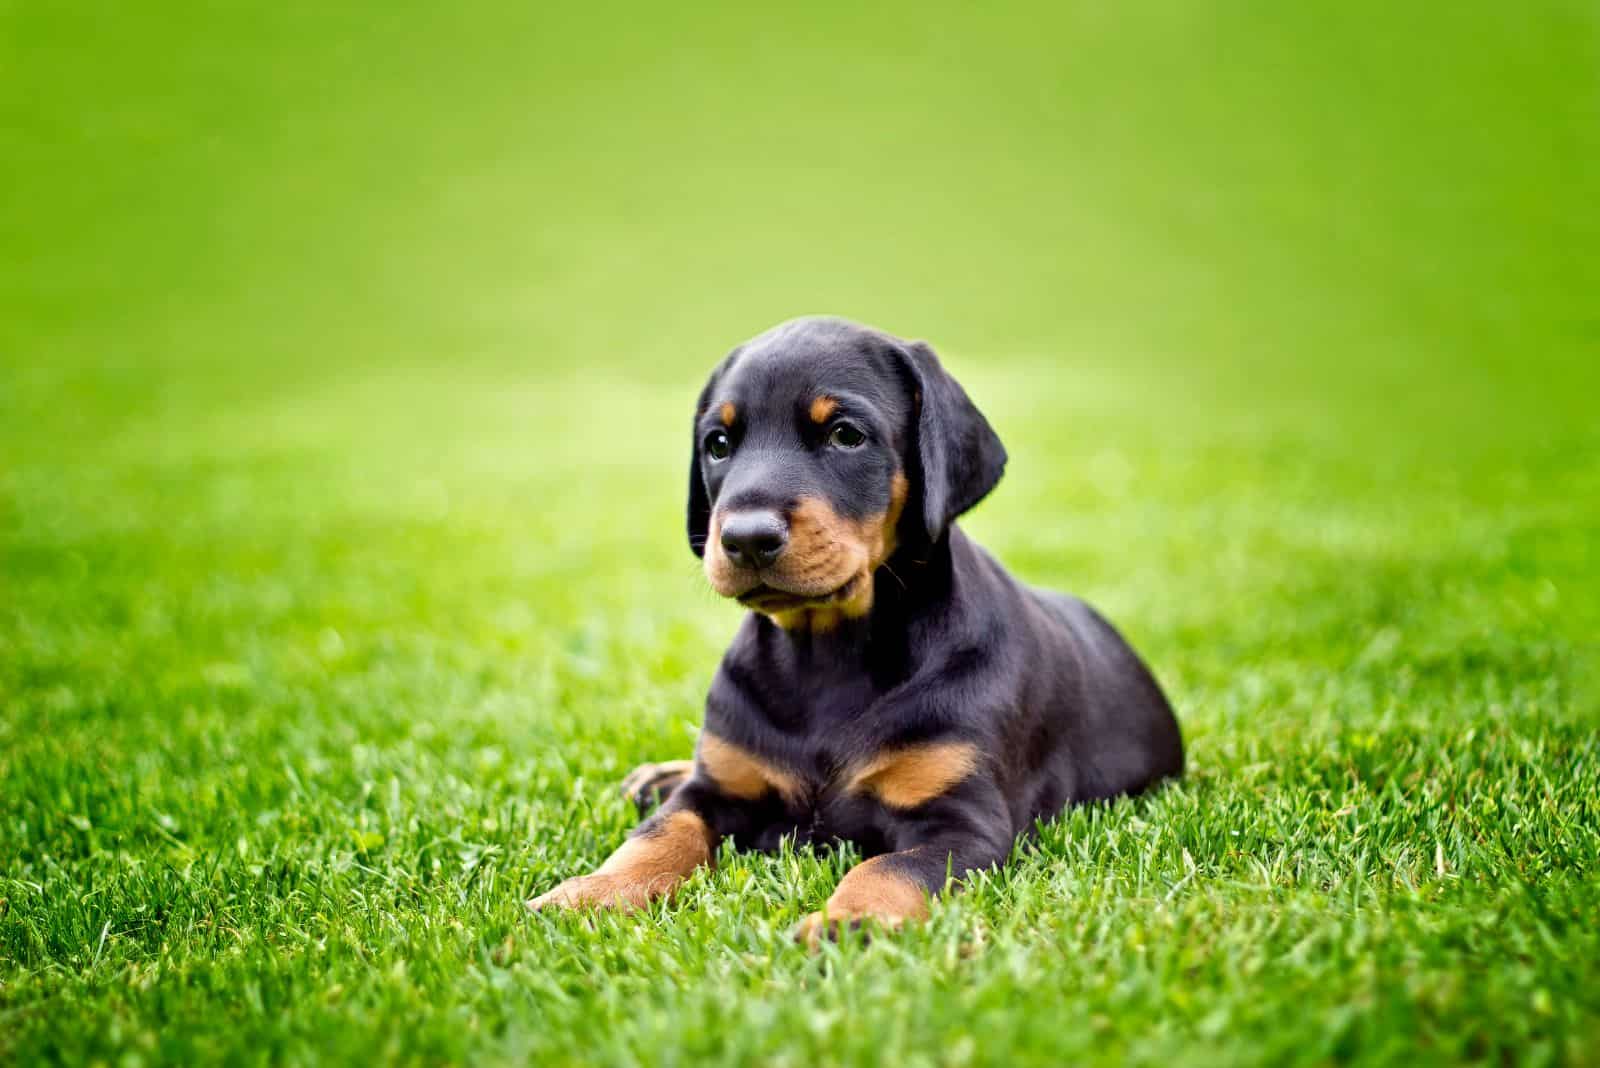 Doberman puppy lies on the grass